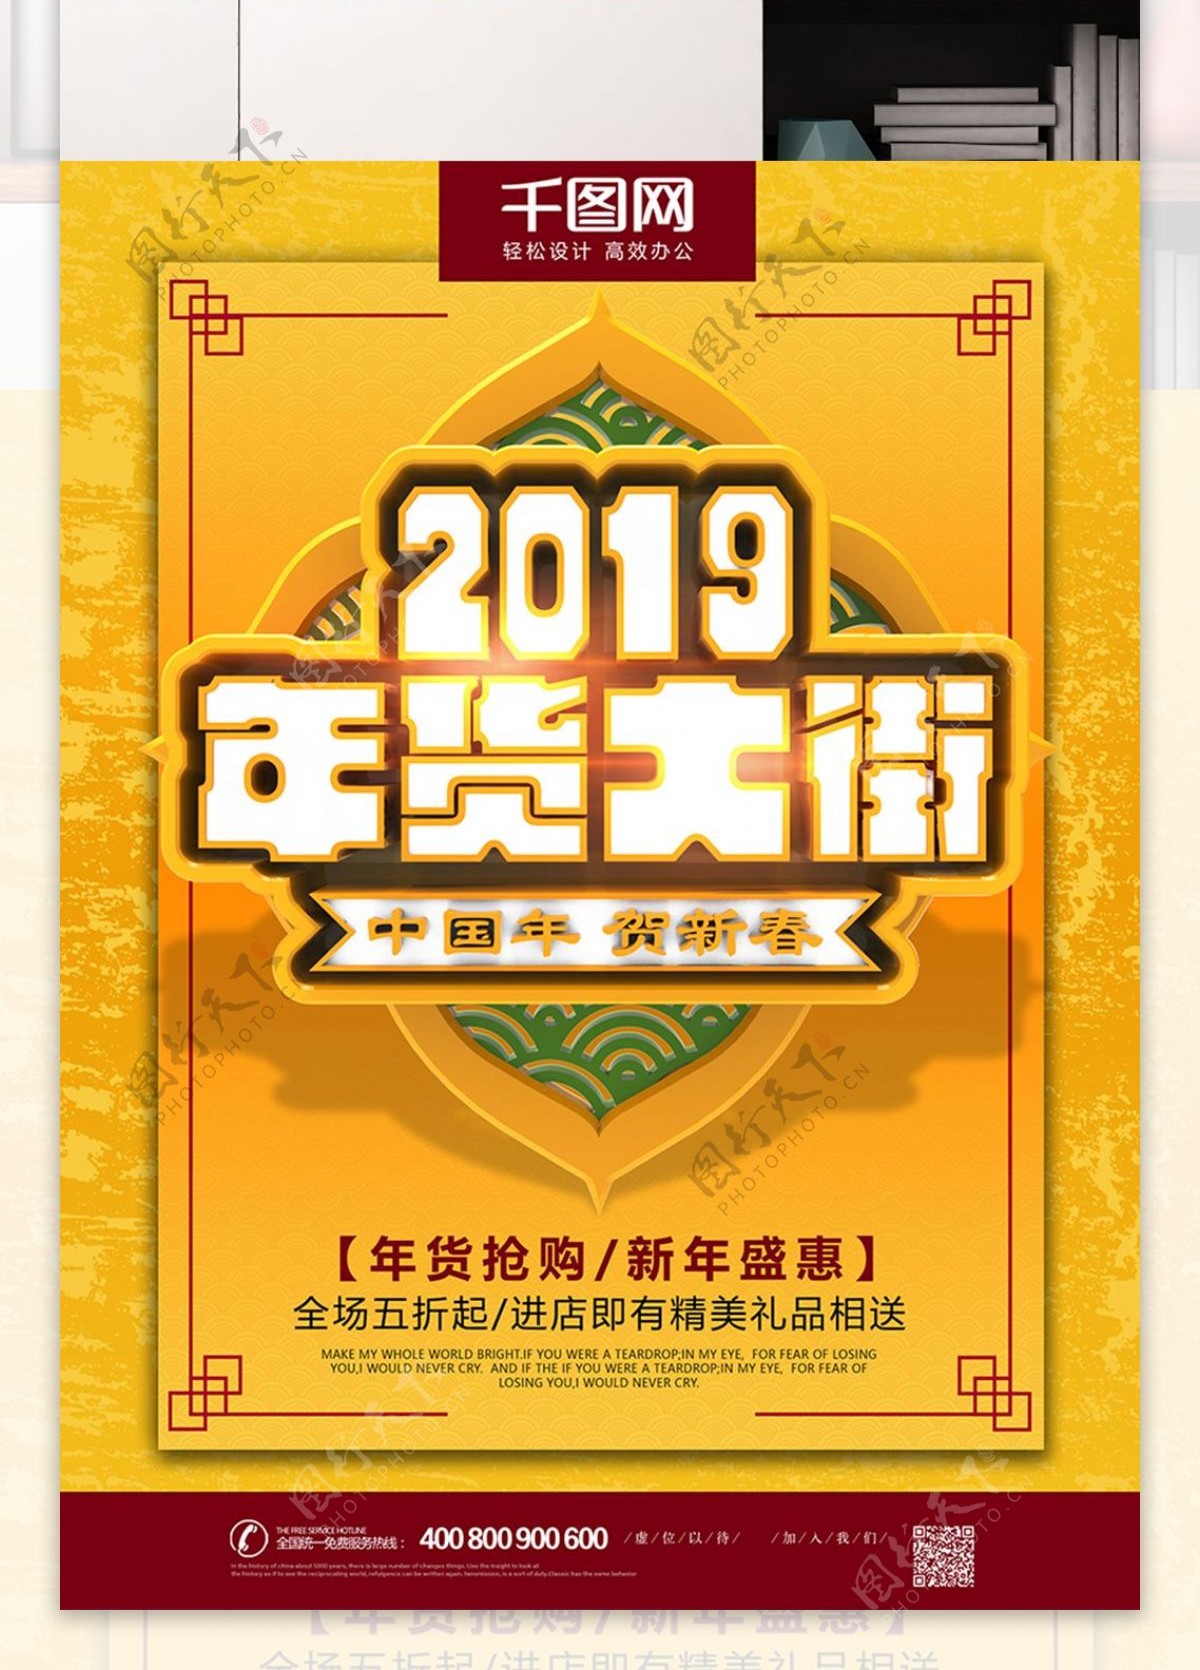 2019年商场年货大街年货节活动促销海报